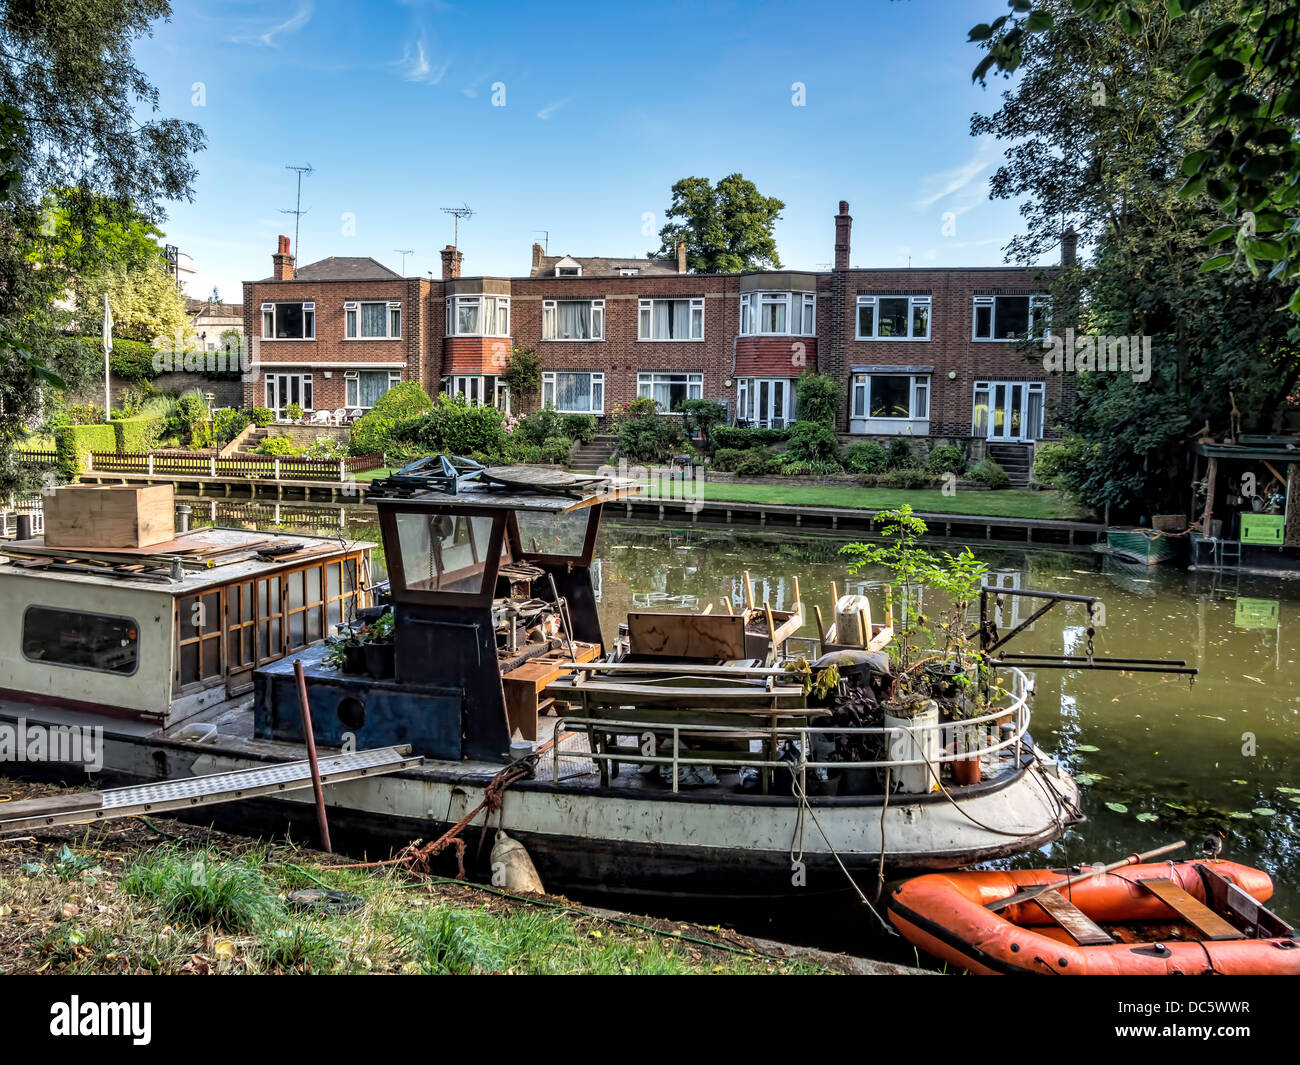 Stretto chiatta barca sotto il verde degli alberi a Cambridge nel Regno Unito Foto Stock